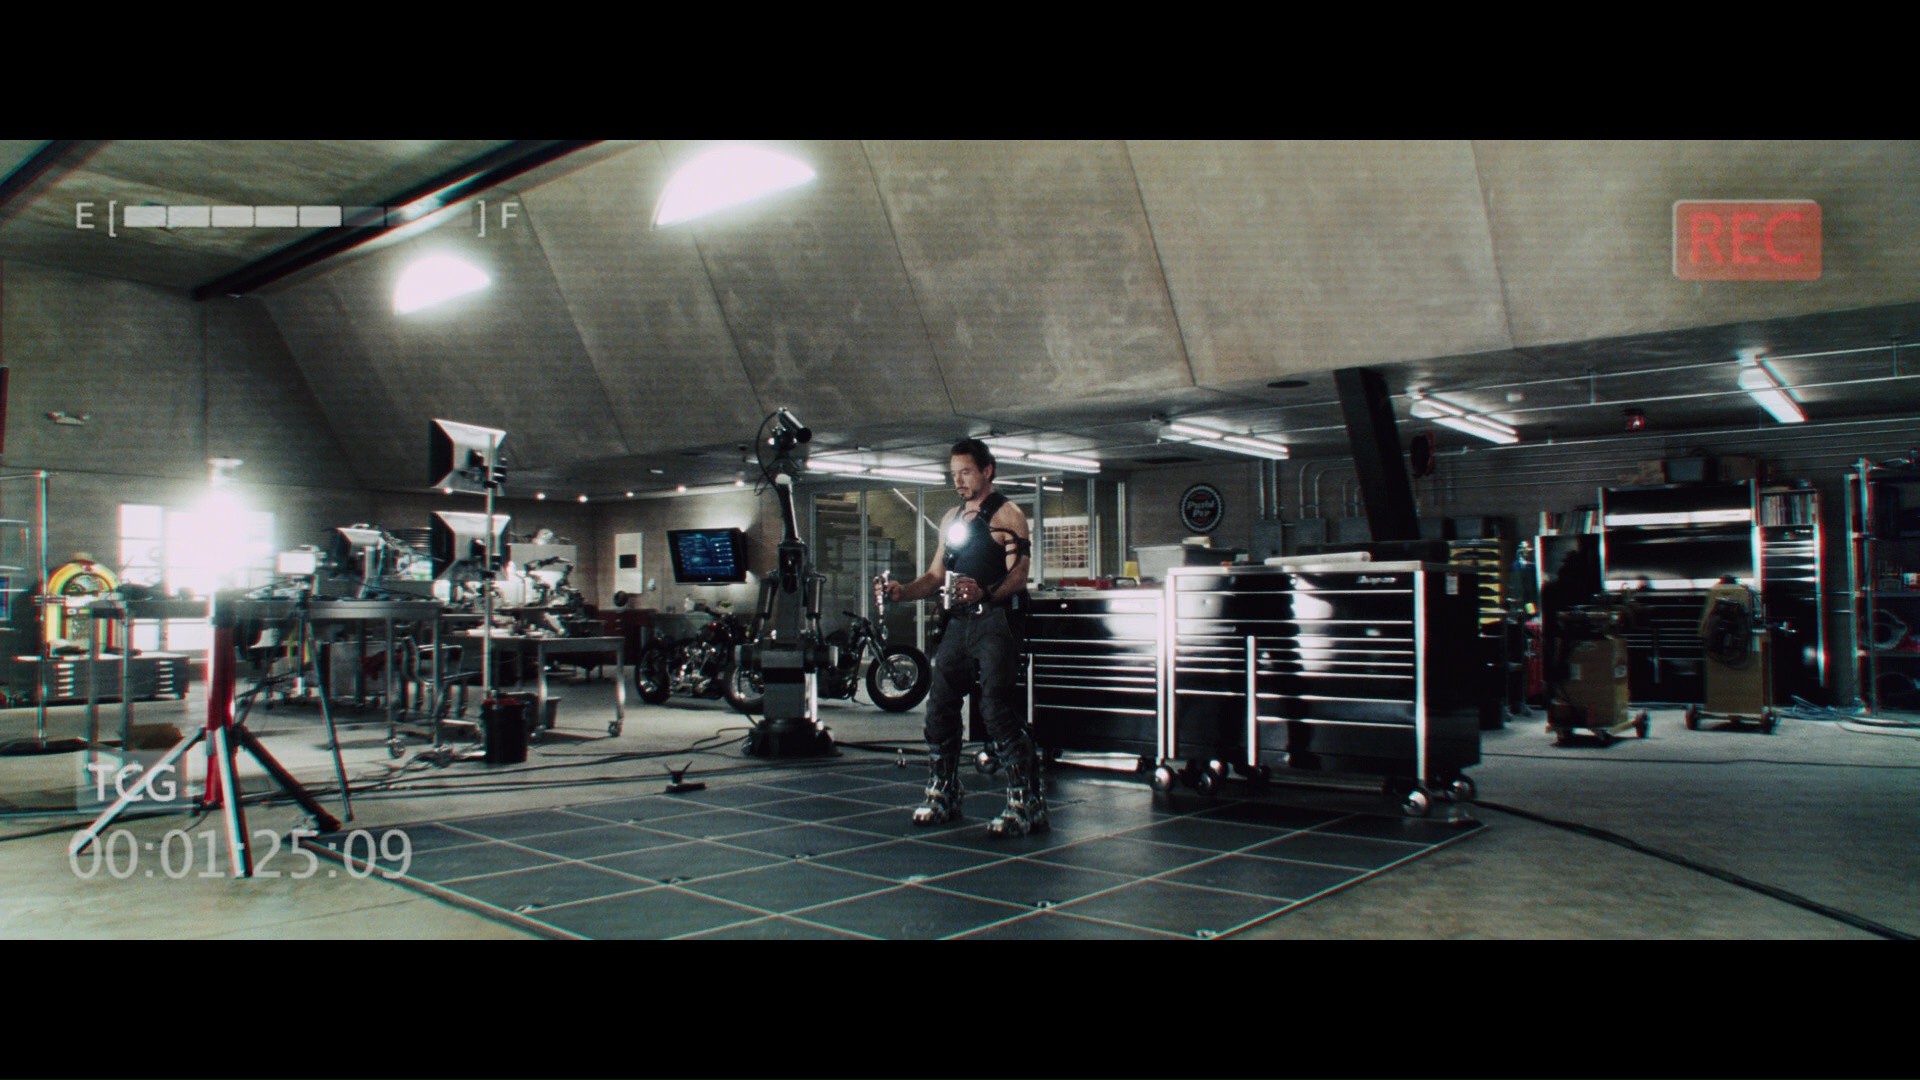 E scene. Железный человек первый взлет. Гараж Тони Старка Железный человек 3. Тони Старк в гараже ребрендинг. Iron man VR испытания.